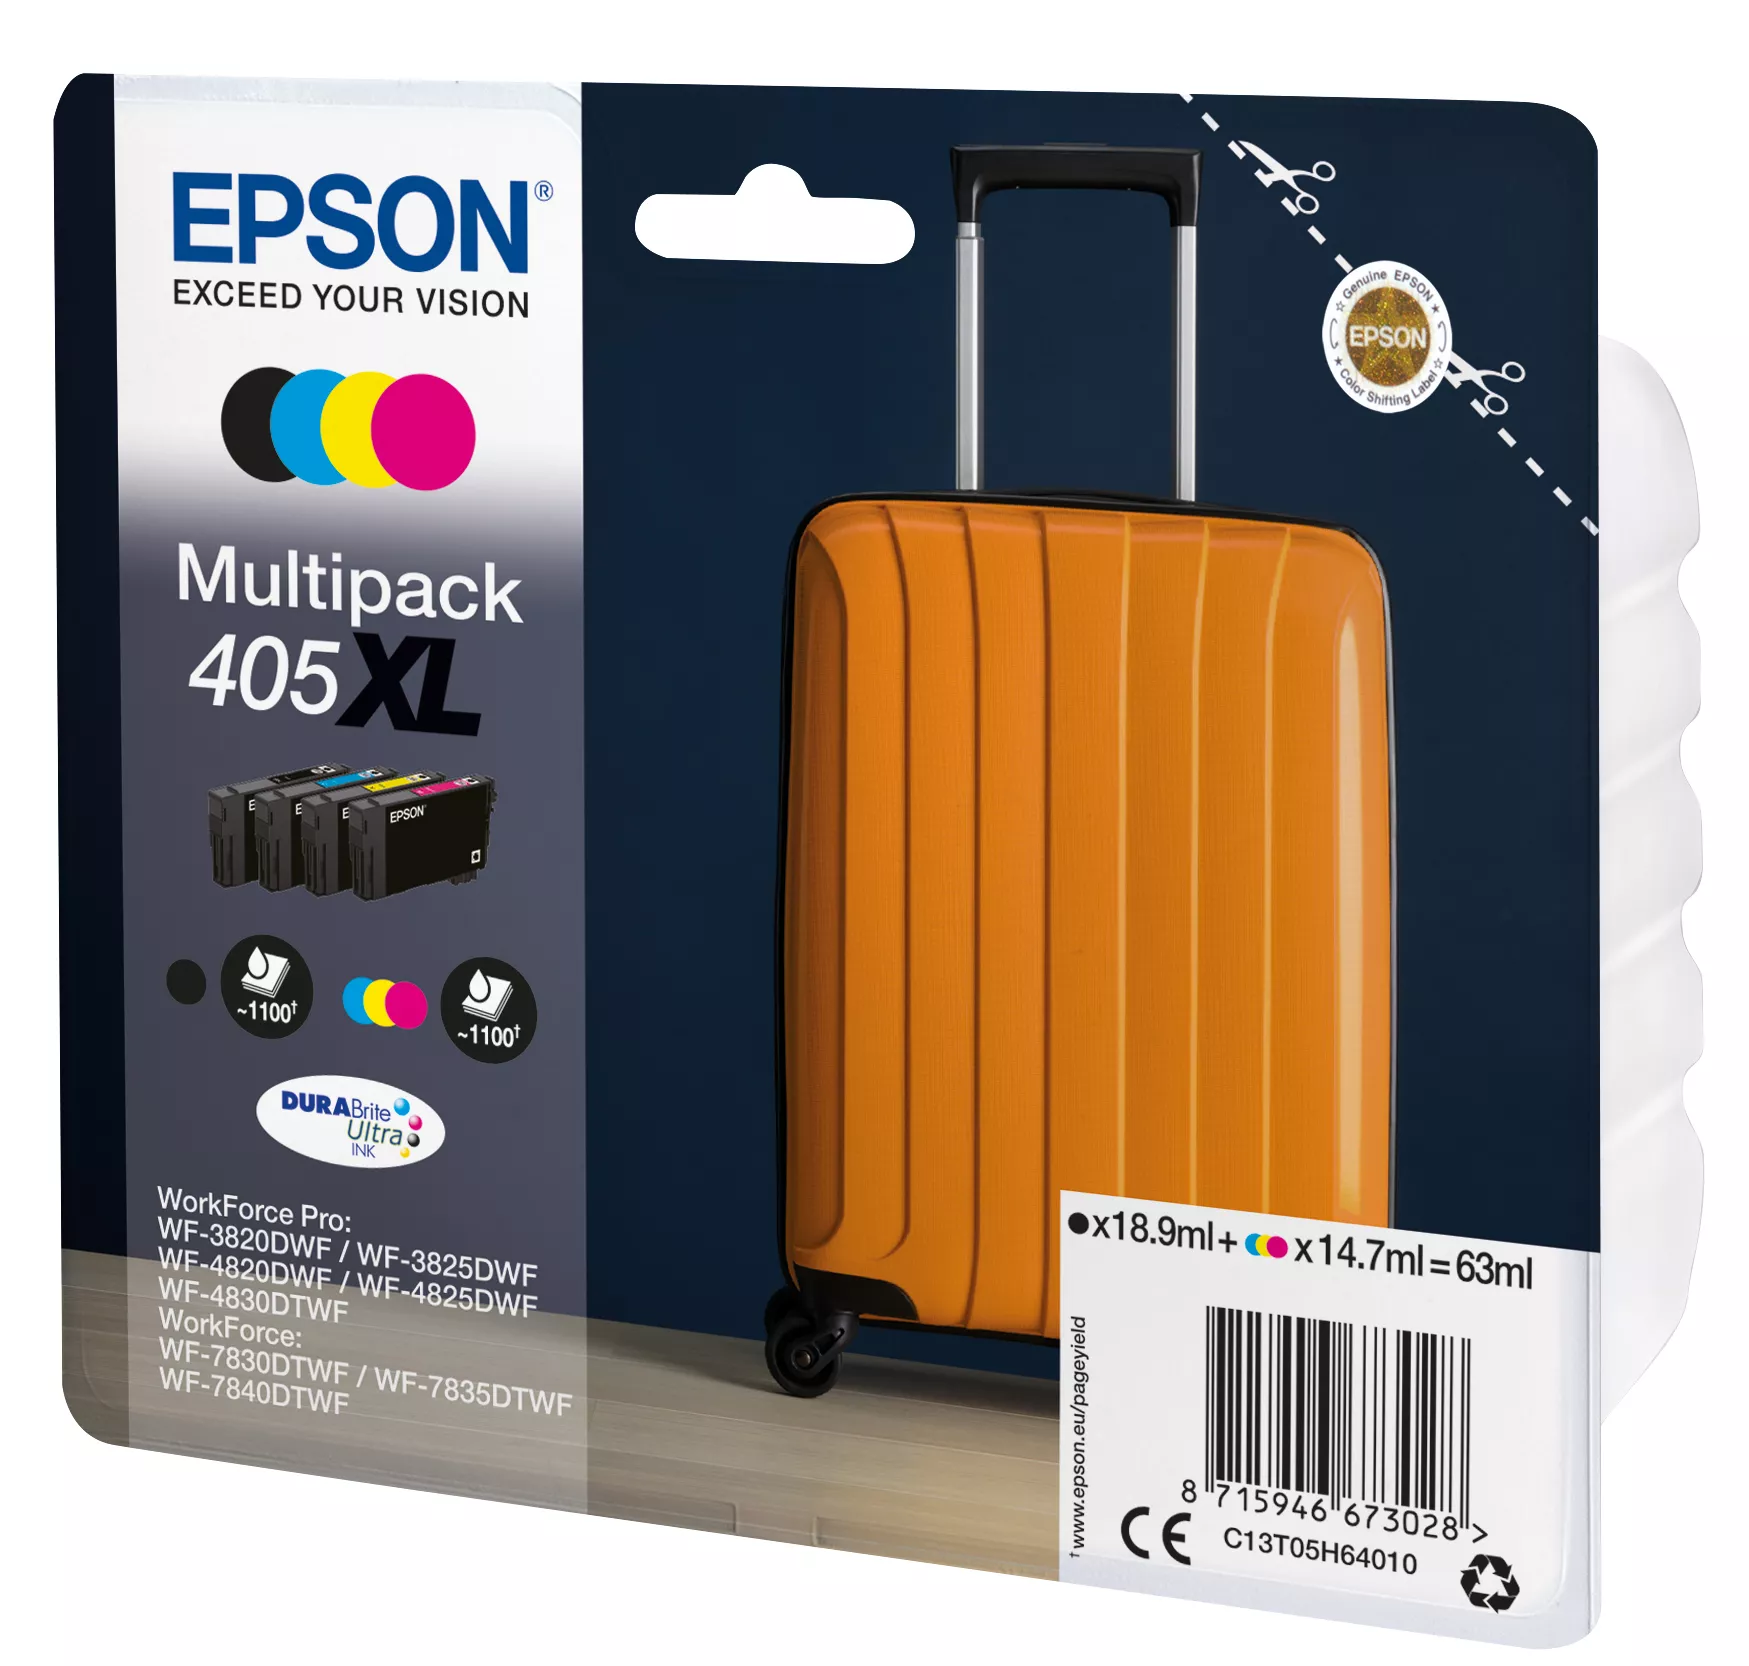 Vente EPSON Multipack 4-colours 405XL DURABrite Ultra Ink Epson au meilleur prix - visuel 2